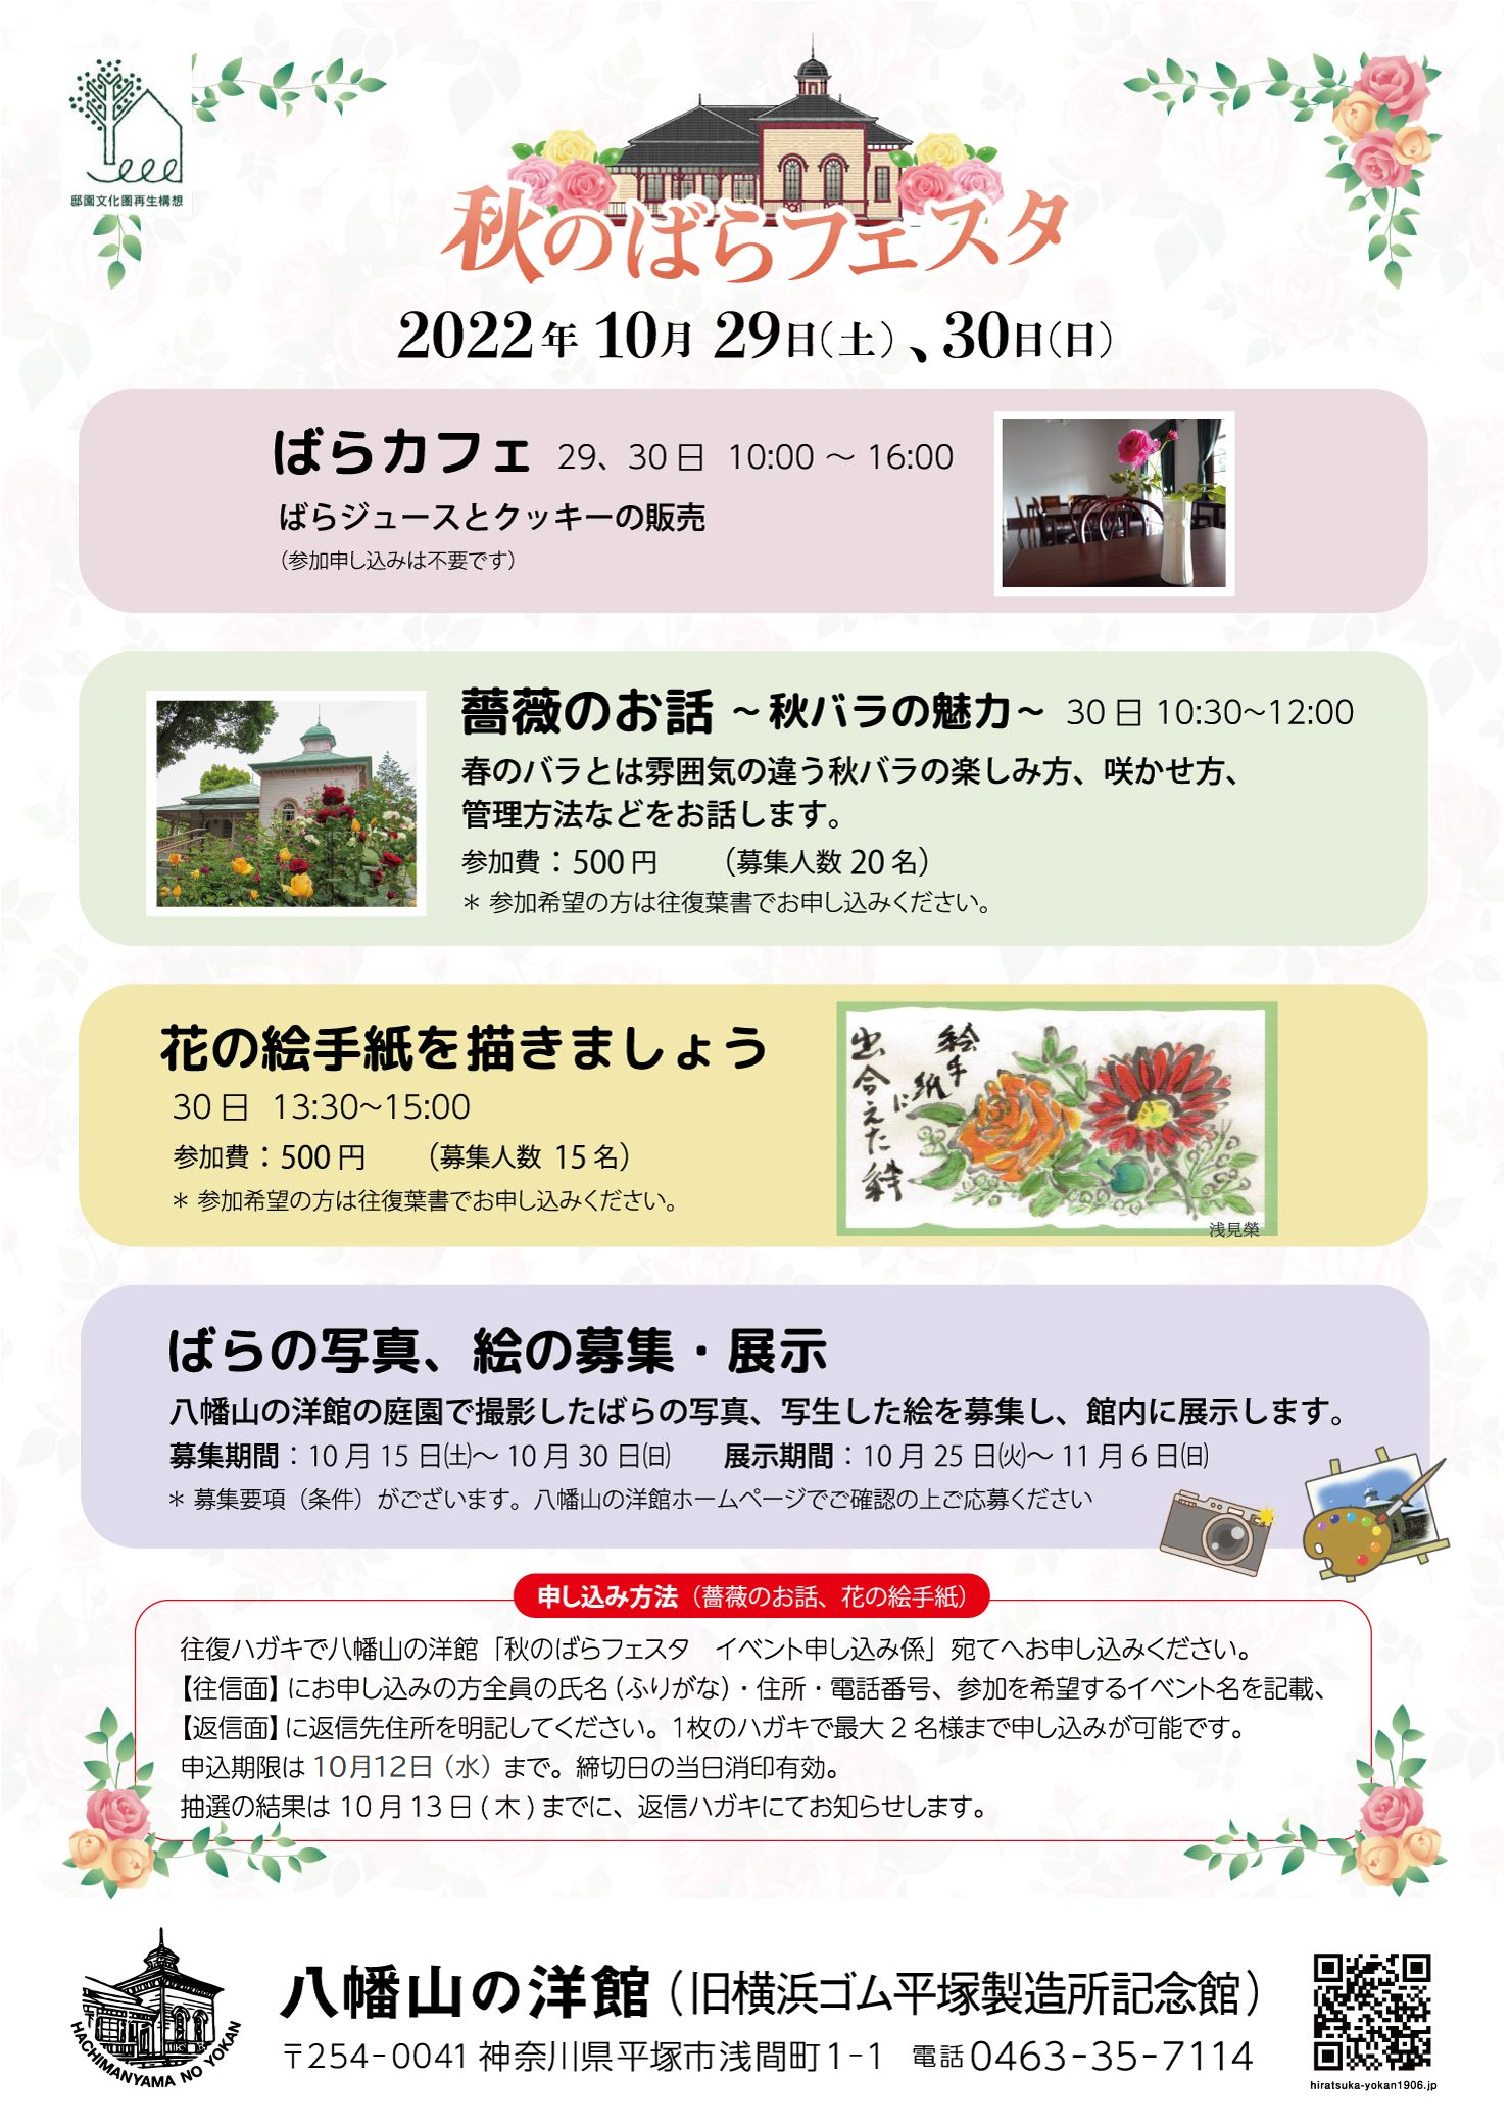 八幡山の洋館 秋のばらフェスタ 10月29日 土曜日、30日 日曜日に開催されます。開催中いろいろな催しがあります。お楽しみください。